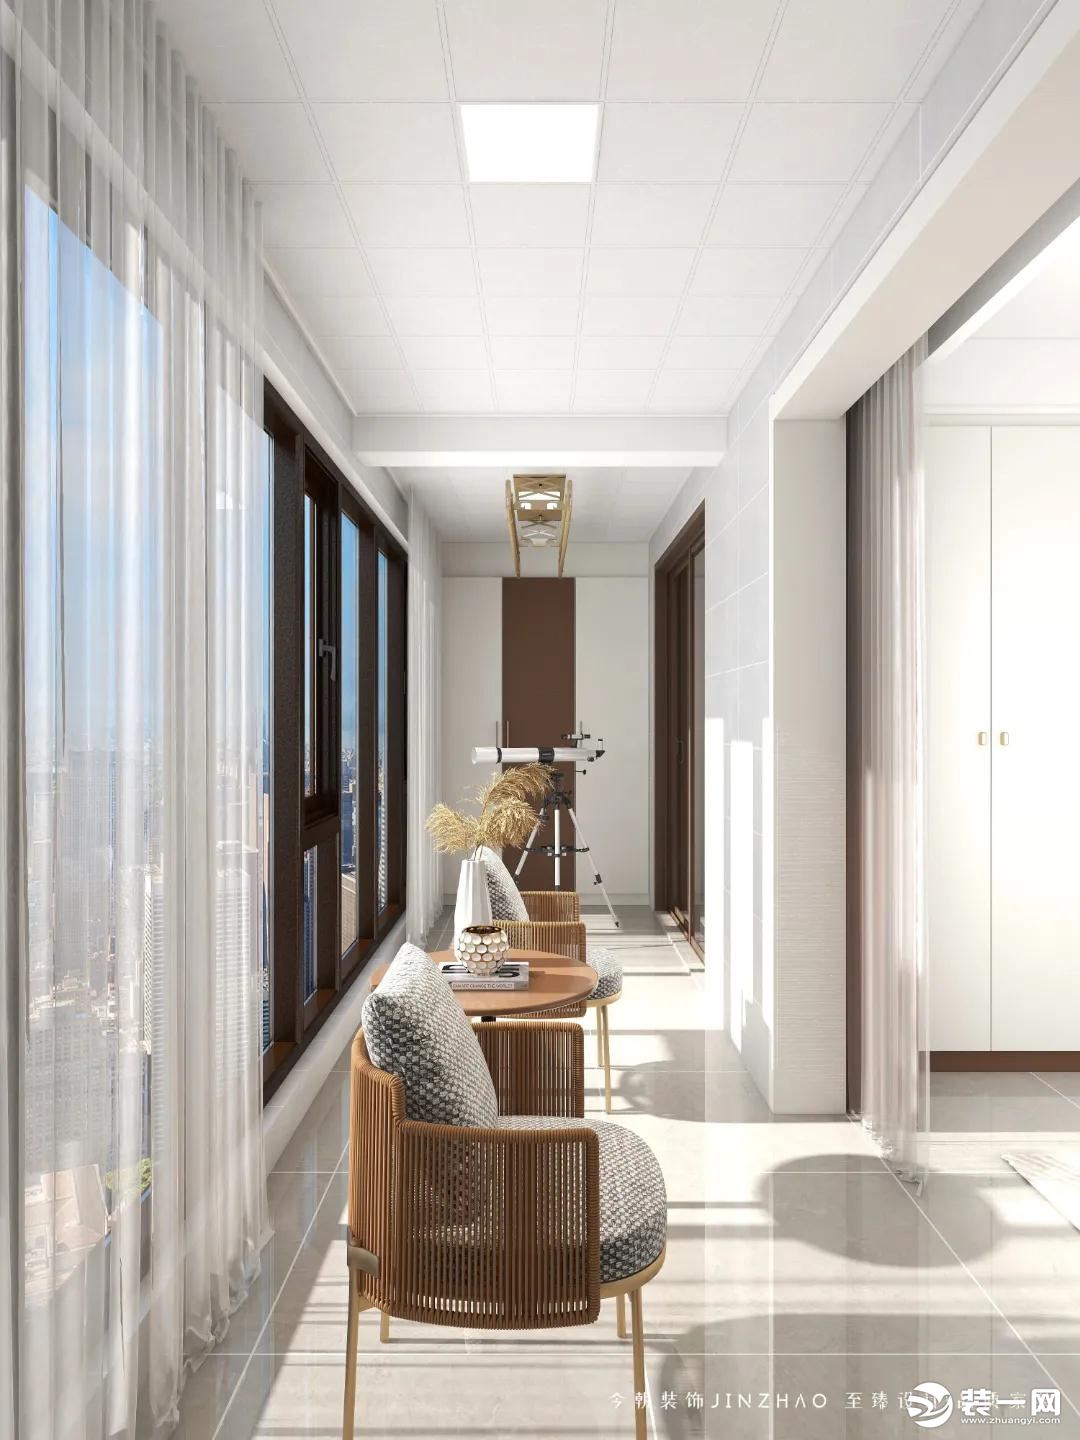 客厅与双子房阳台相连，整面落地窗光线进入室内更充足，藤椅元素带入传统中式的意蕴。